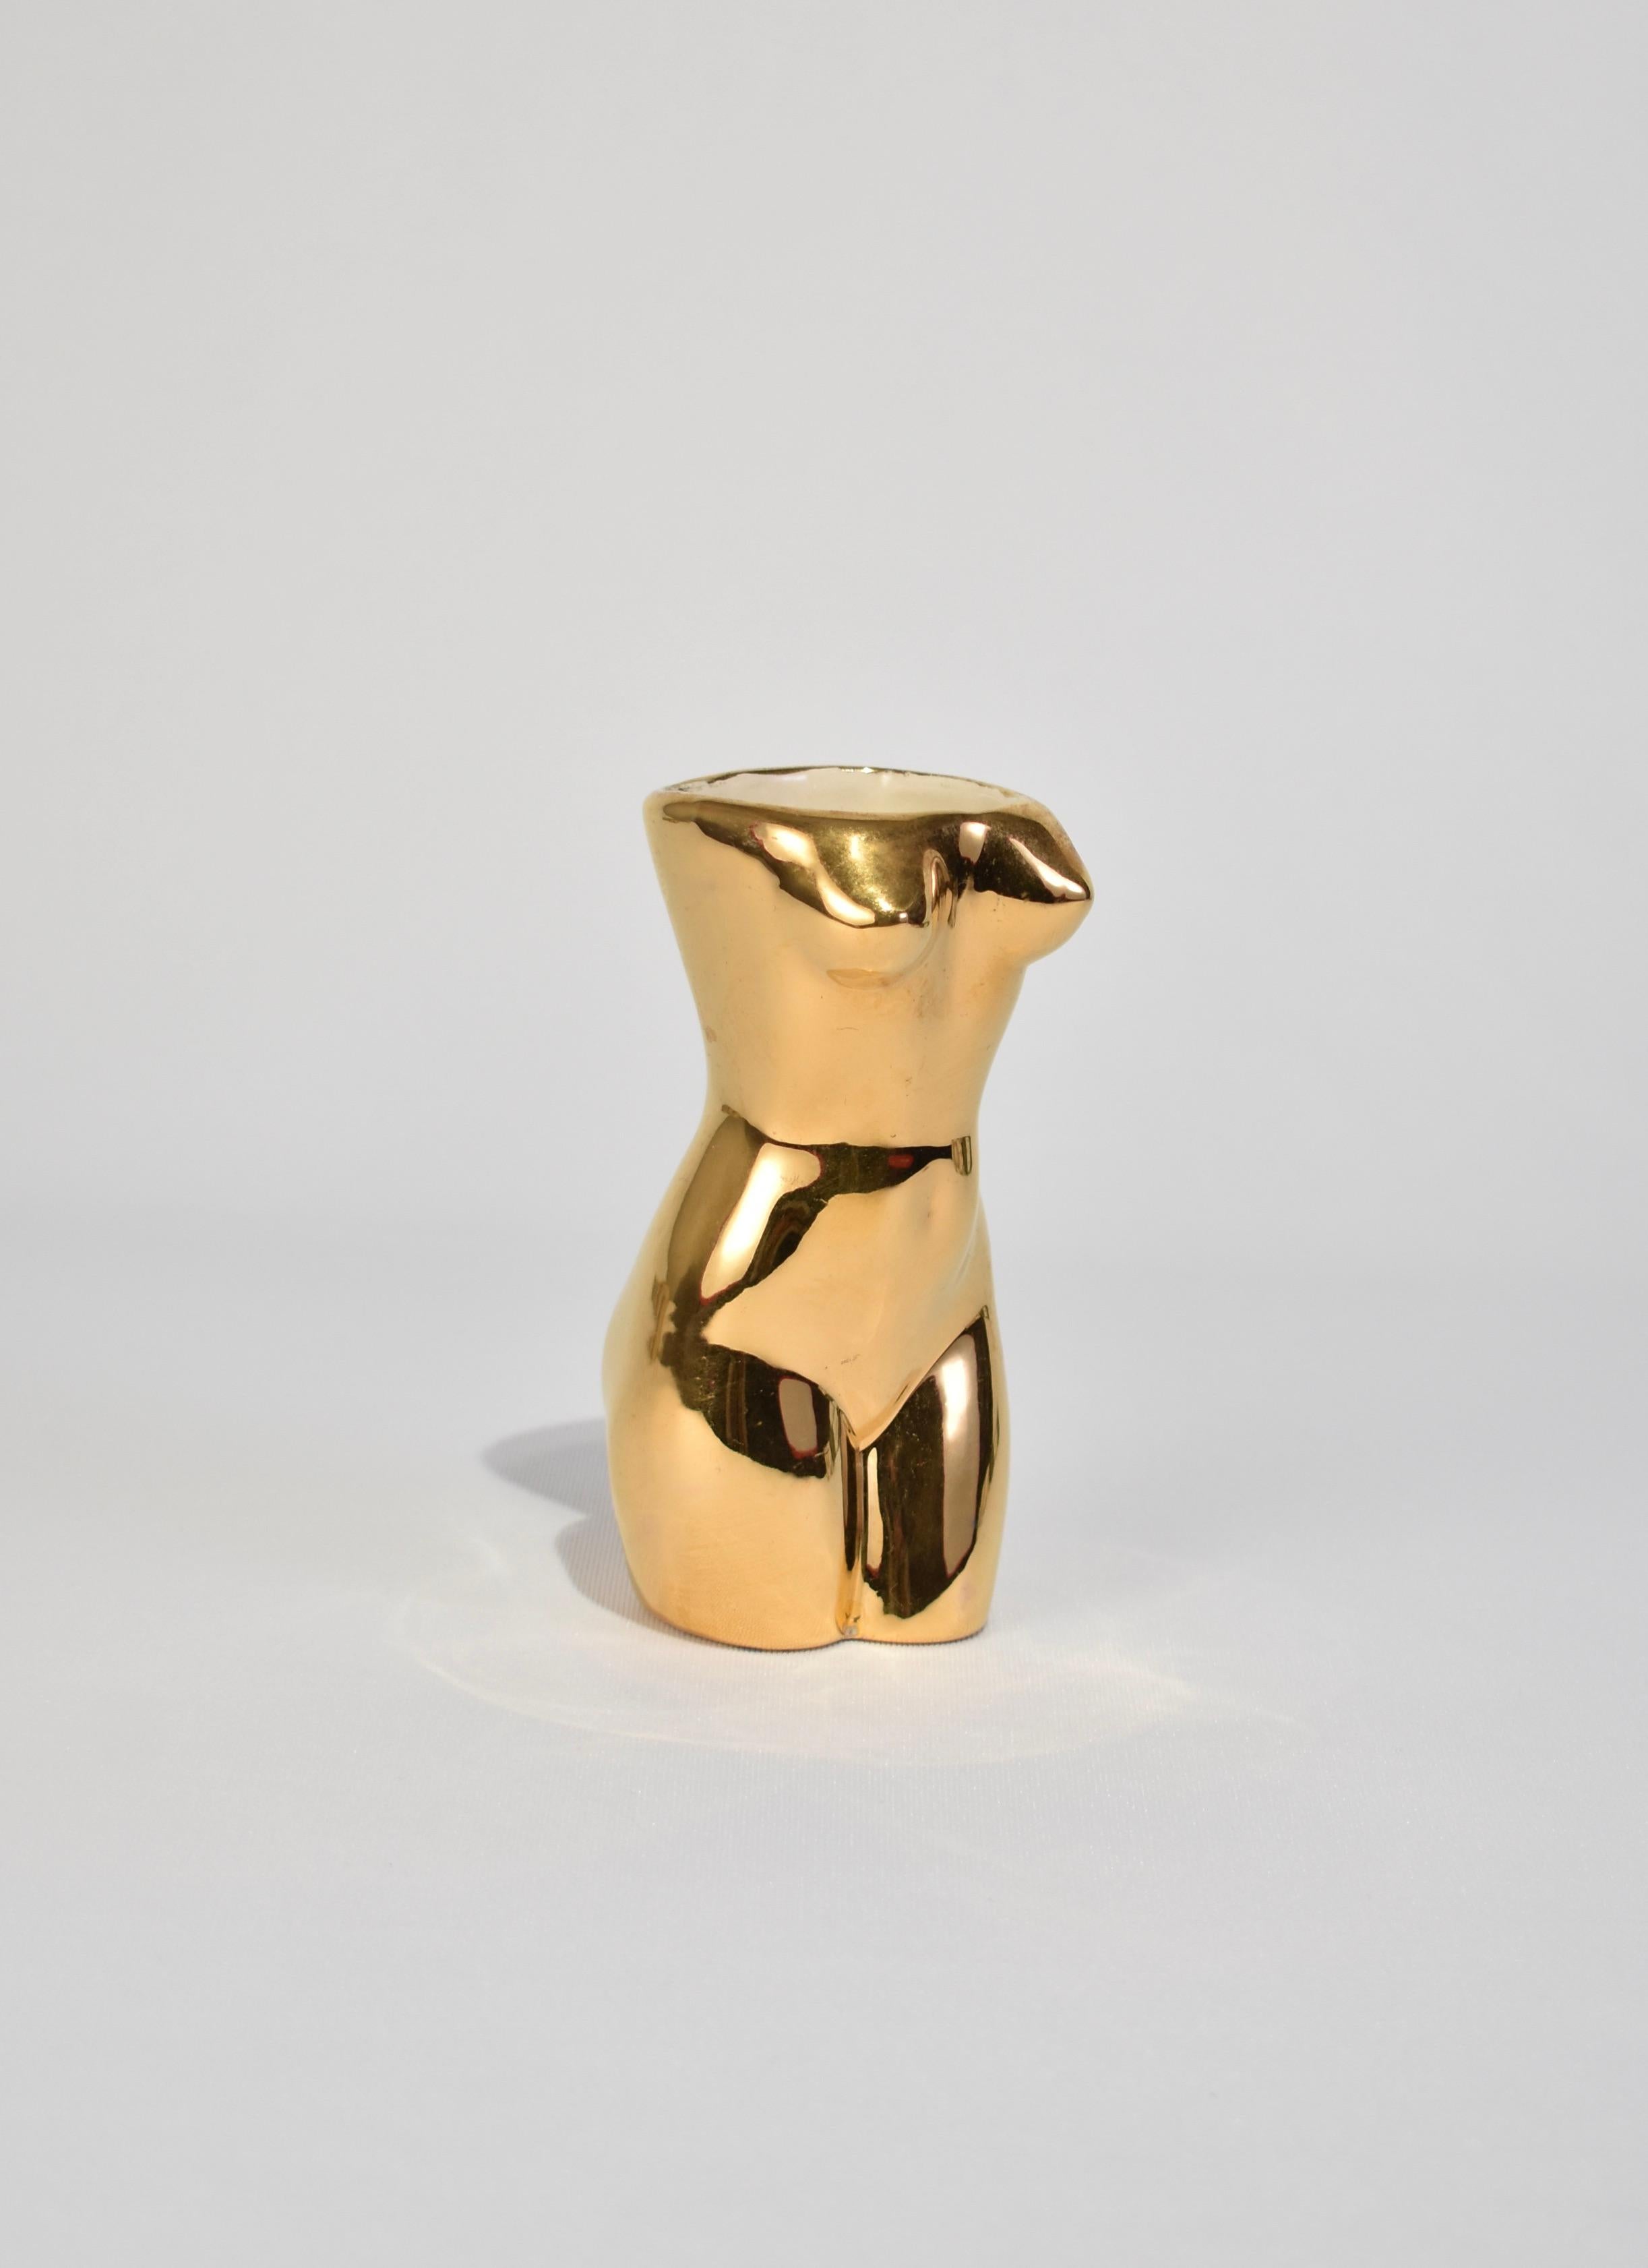 Handmade, petite vintage ceramic torso vase in a lustrous gold glaze. Signed on base.